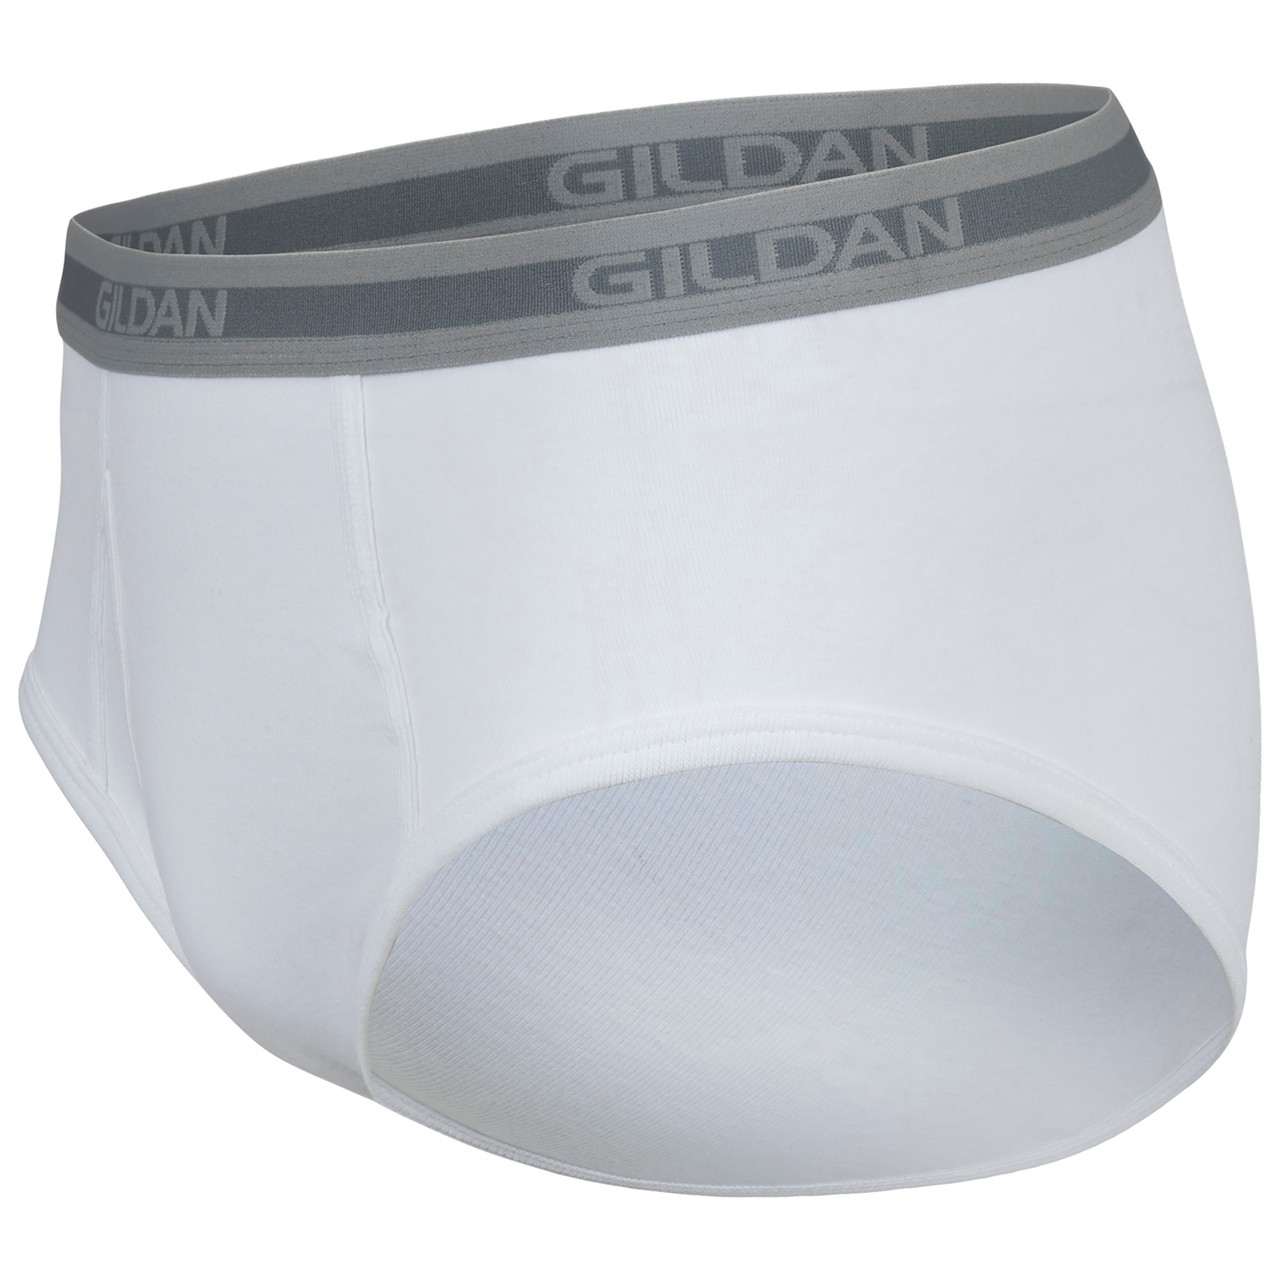 Gildan Men's Premium Soft Cotton 2 Pack White Briefs Size 2XL (44